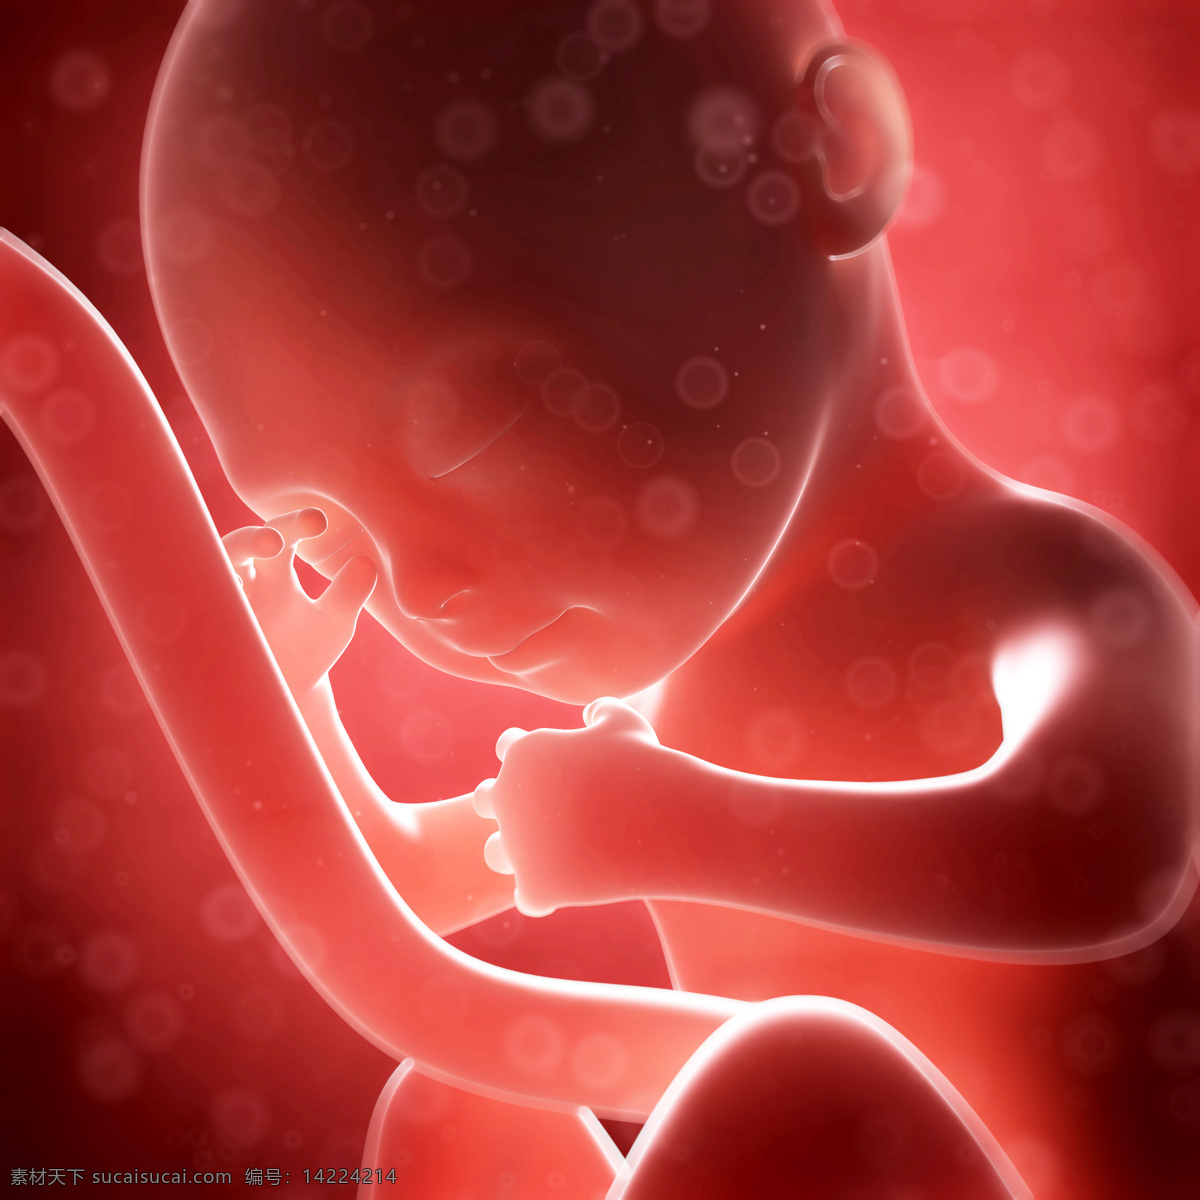 发育中的胚胎 唯美 炫酷 3d 胚胎 发育 婴儿 早期婴儿 初期婴儿 怀孕 子宫里的婴儿 产科 妇产科 早期胚胎 科学 医疗 生命延续 繁殖 3d设计